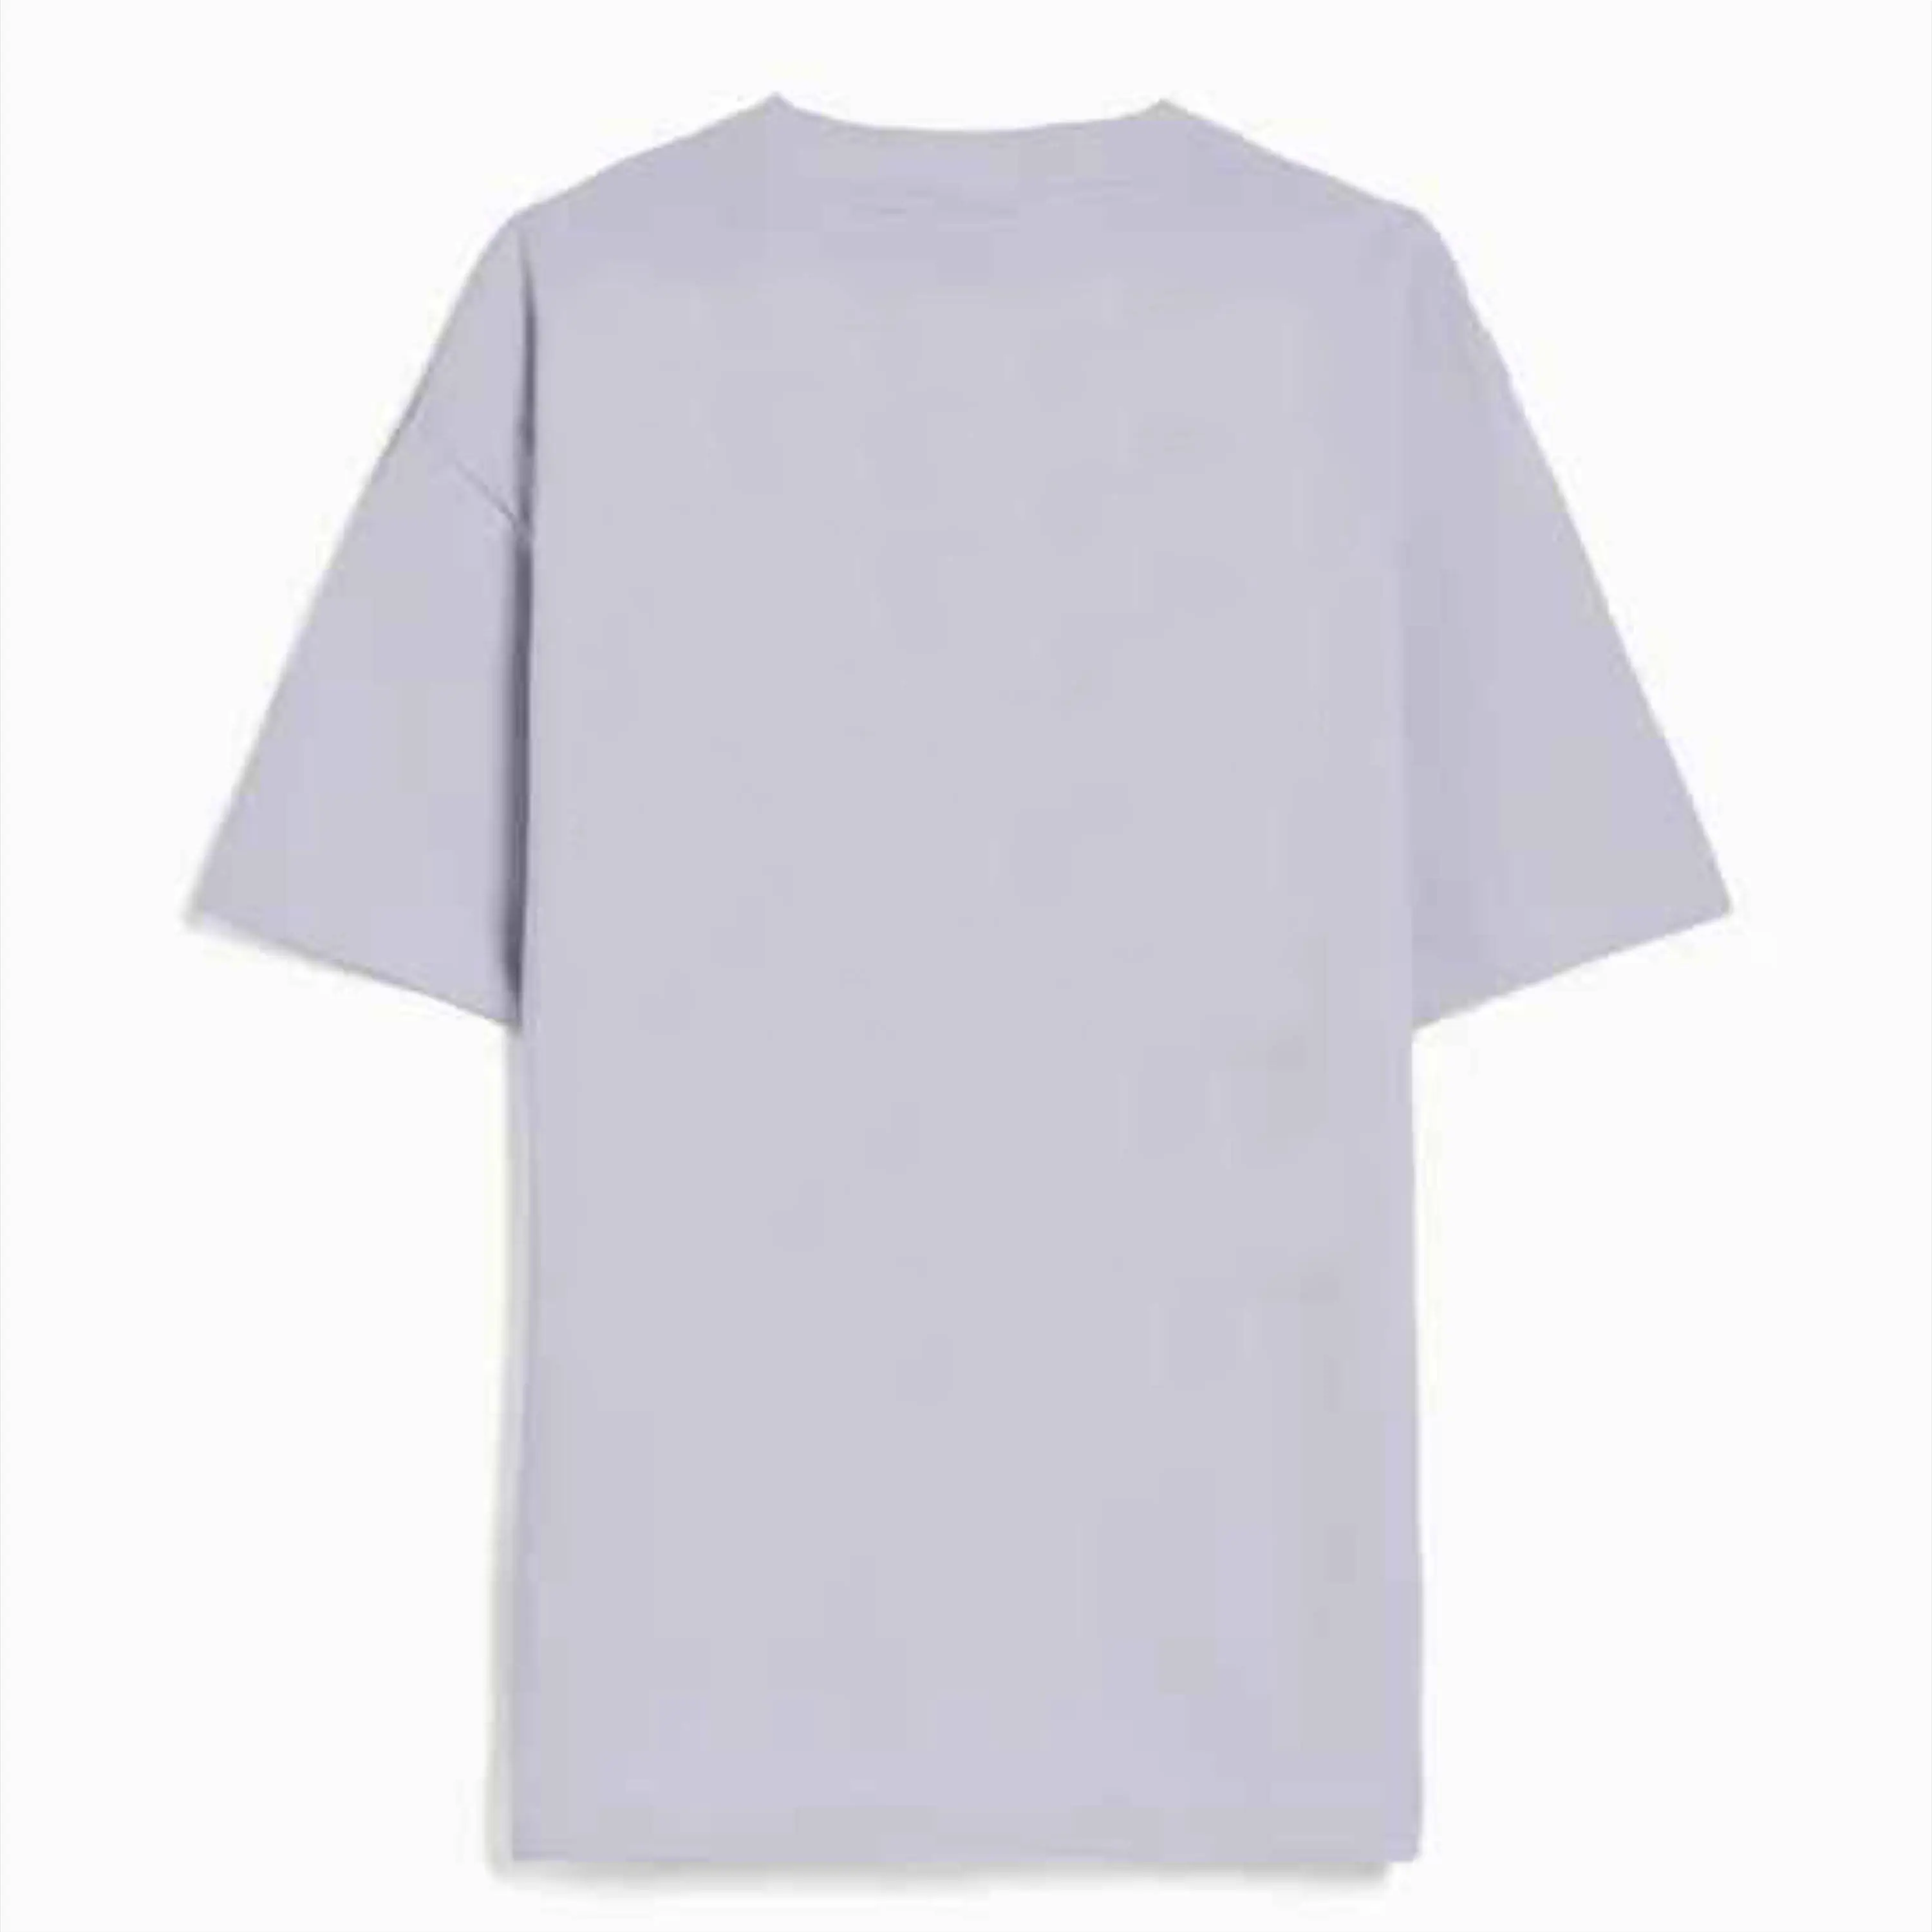 Yüksek kaliteli spor t-shirt özel Logo grafik ekran baskı kırpılmış Fit Boxy T Shirt erkek kadın